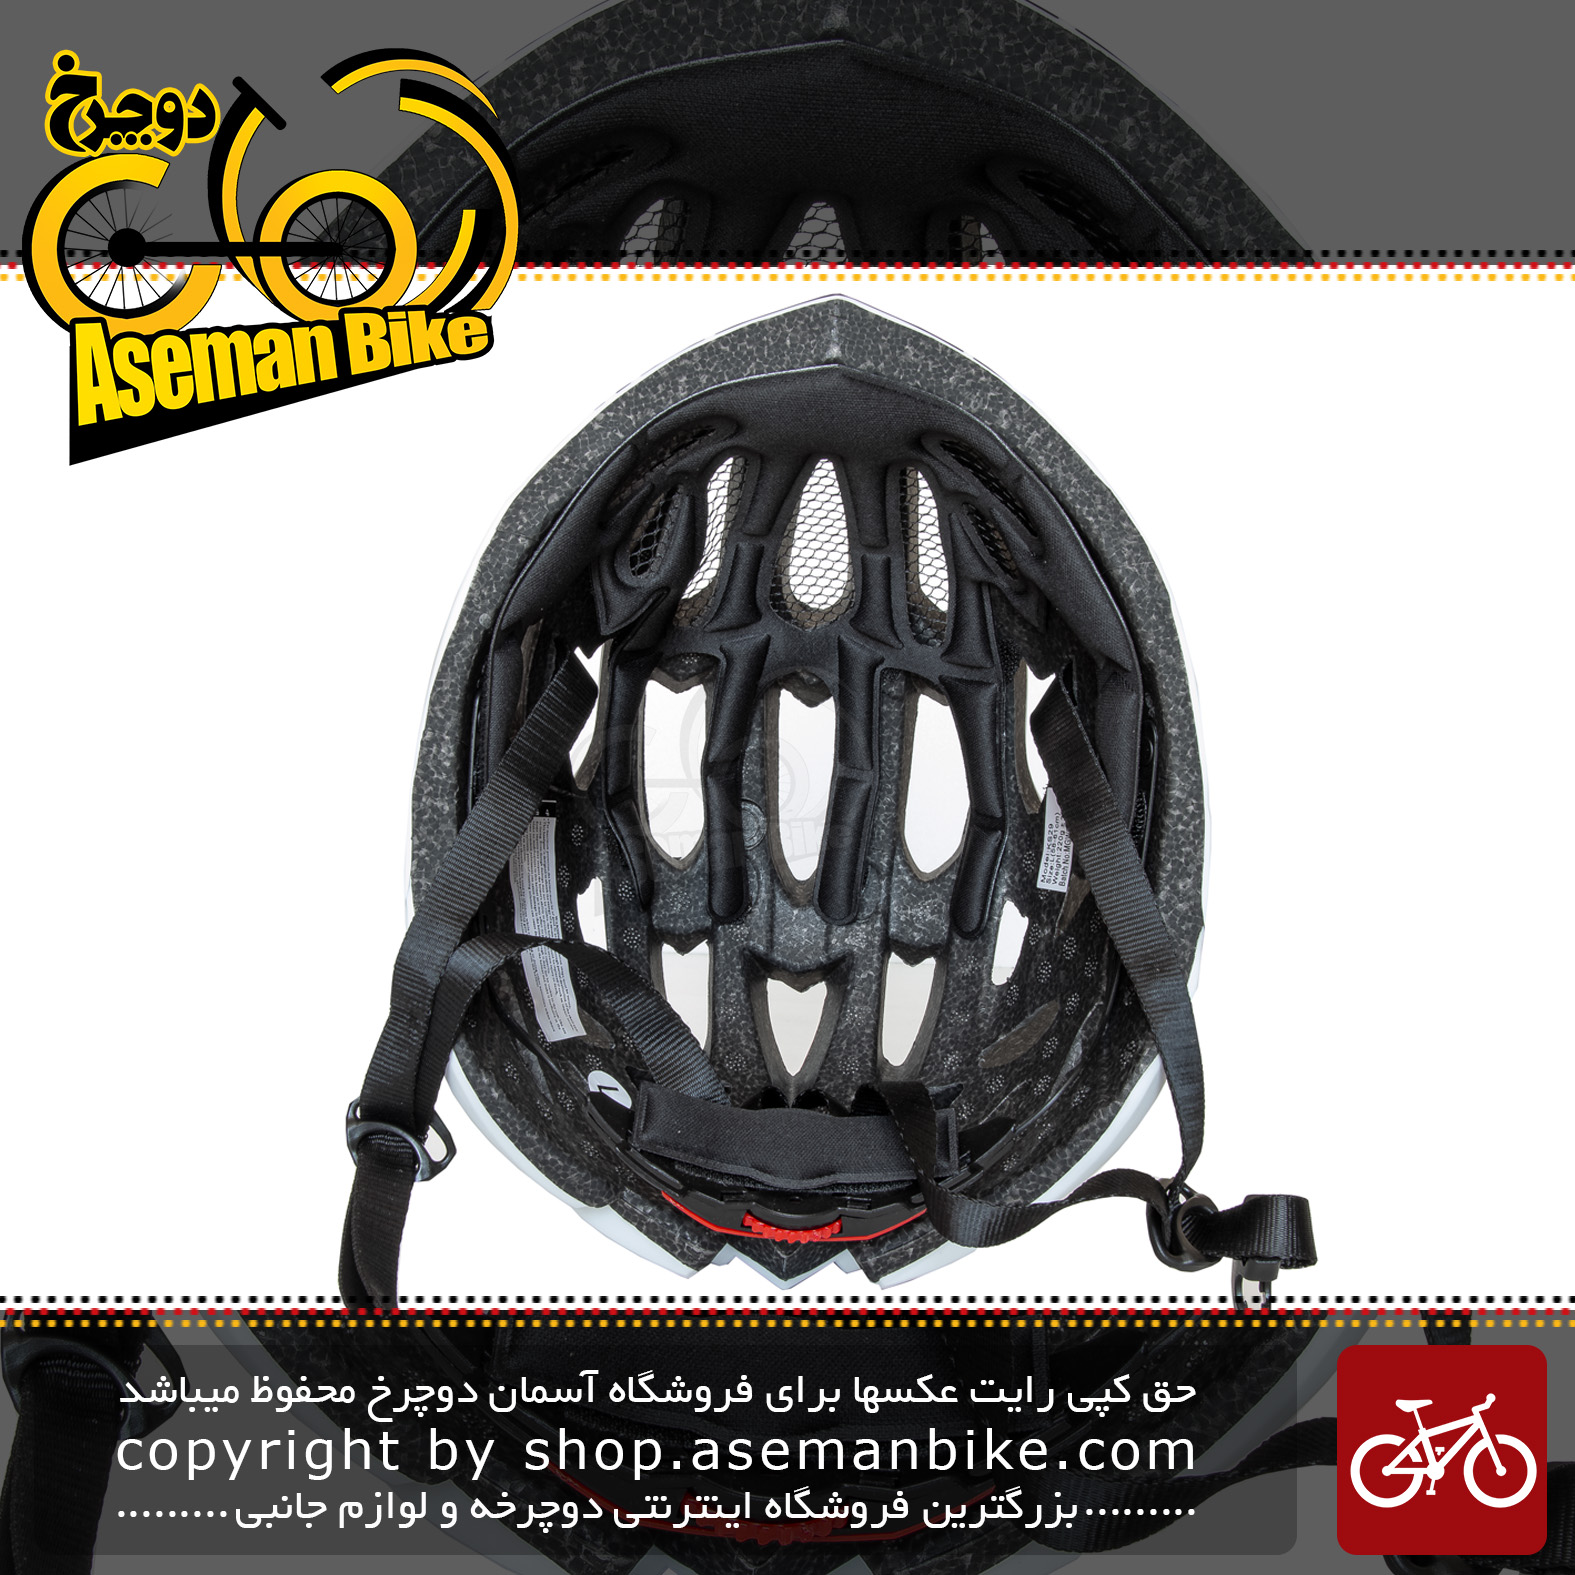 کلاه دوچرخه سواری راکی مدل KS29 سایز لارج رنگ مشکی سبز Helmet Bicycle Rocky KS29 Size L Black & Green